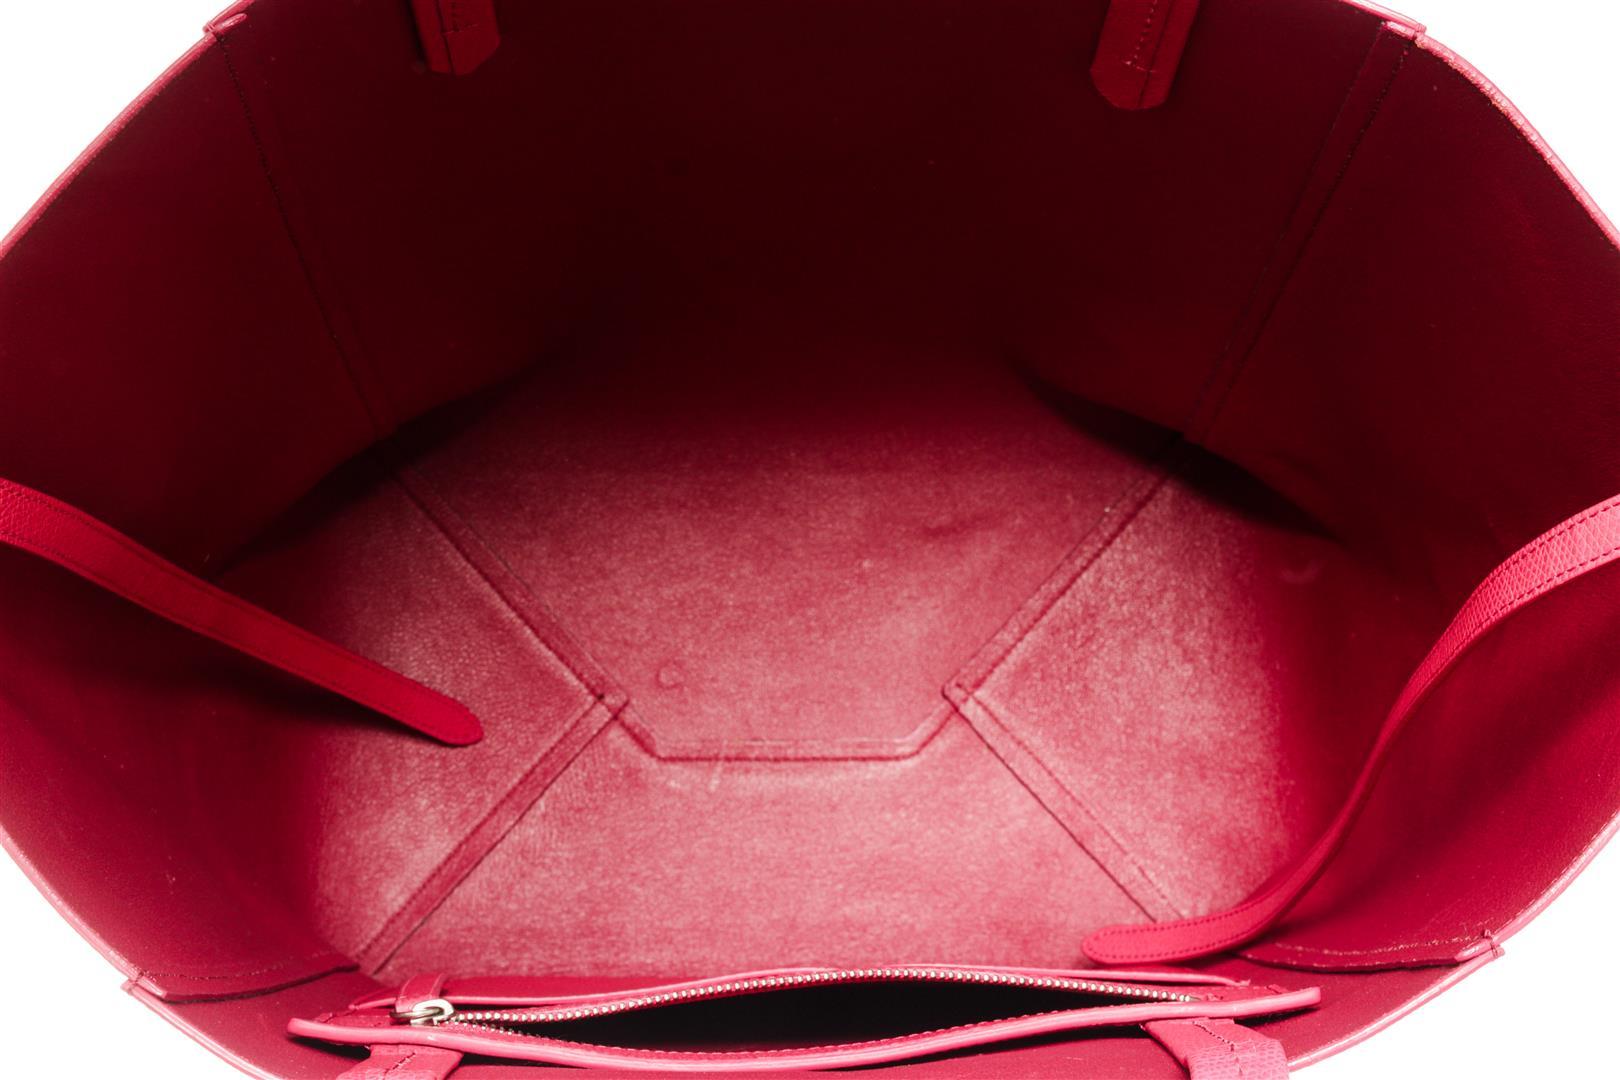 Celine Pink Leather Phantom Cabas Tote Bag